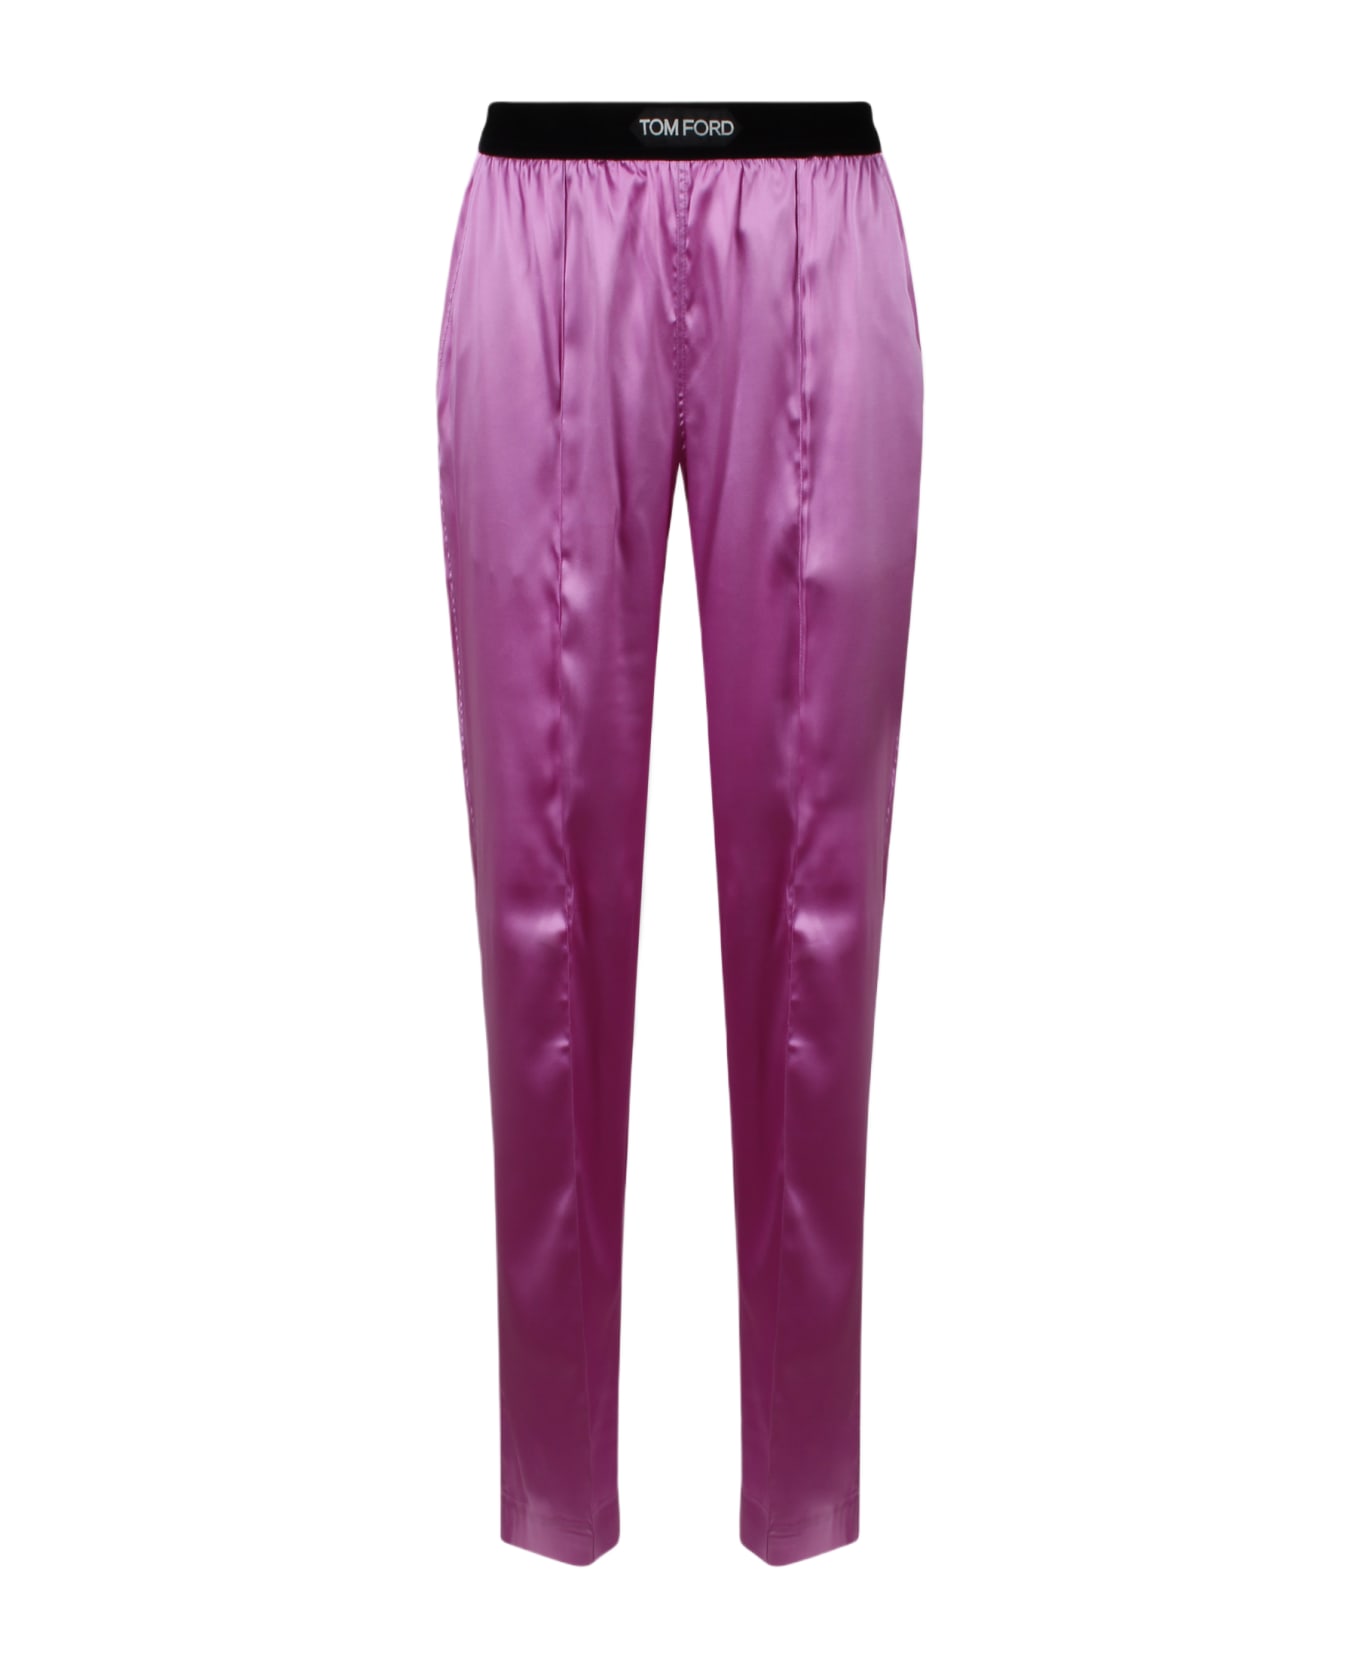 Tom Ford Stretch Silk Satin Pj Pants - Pink & Purple